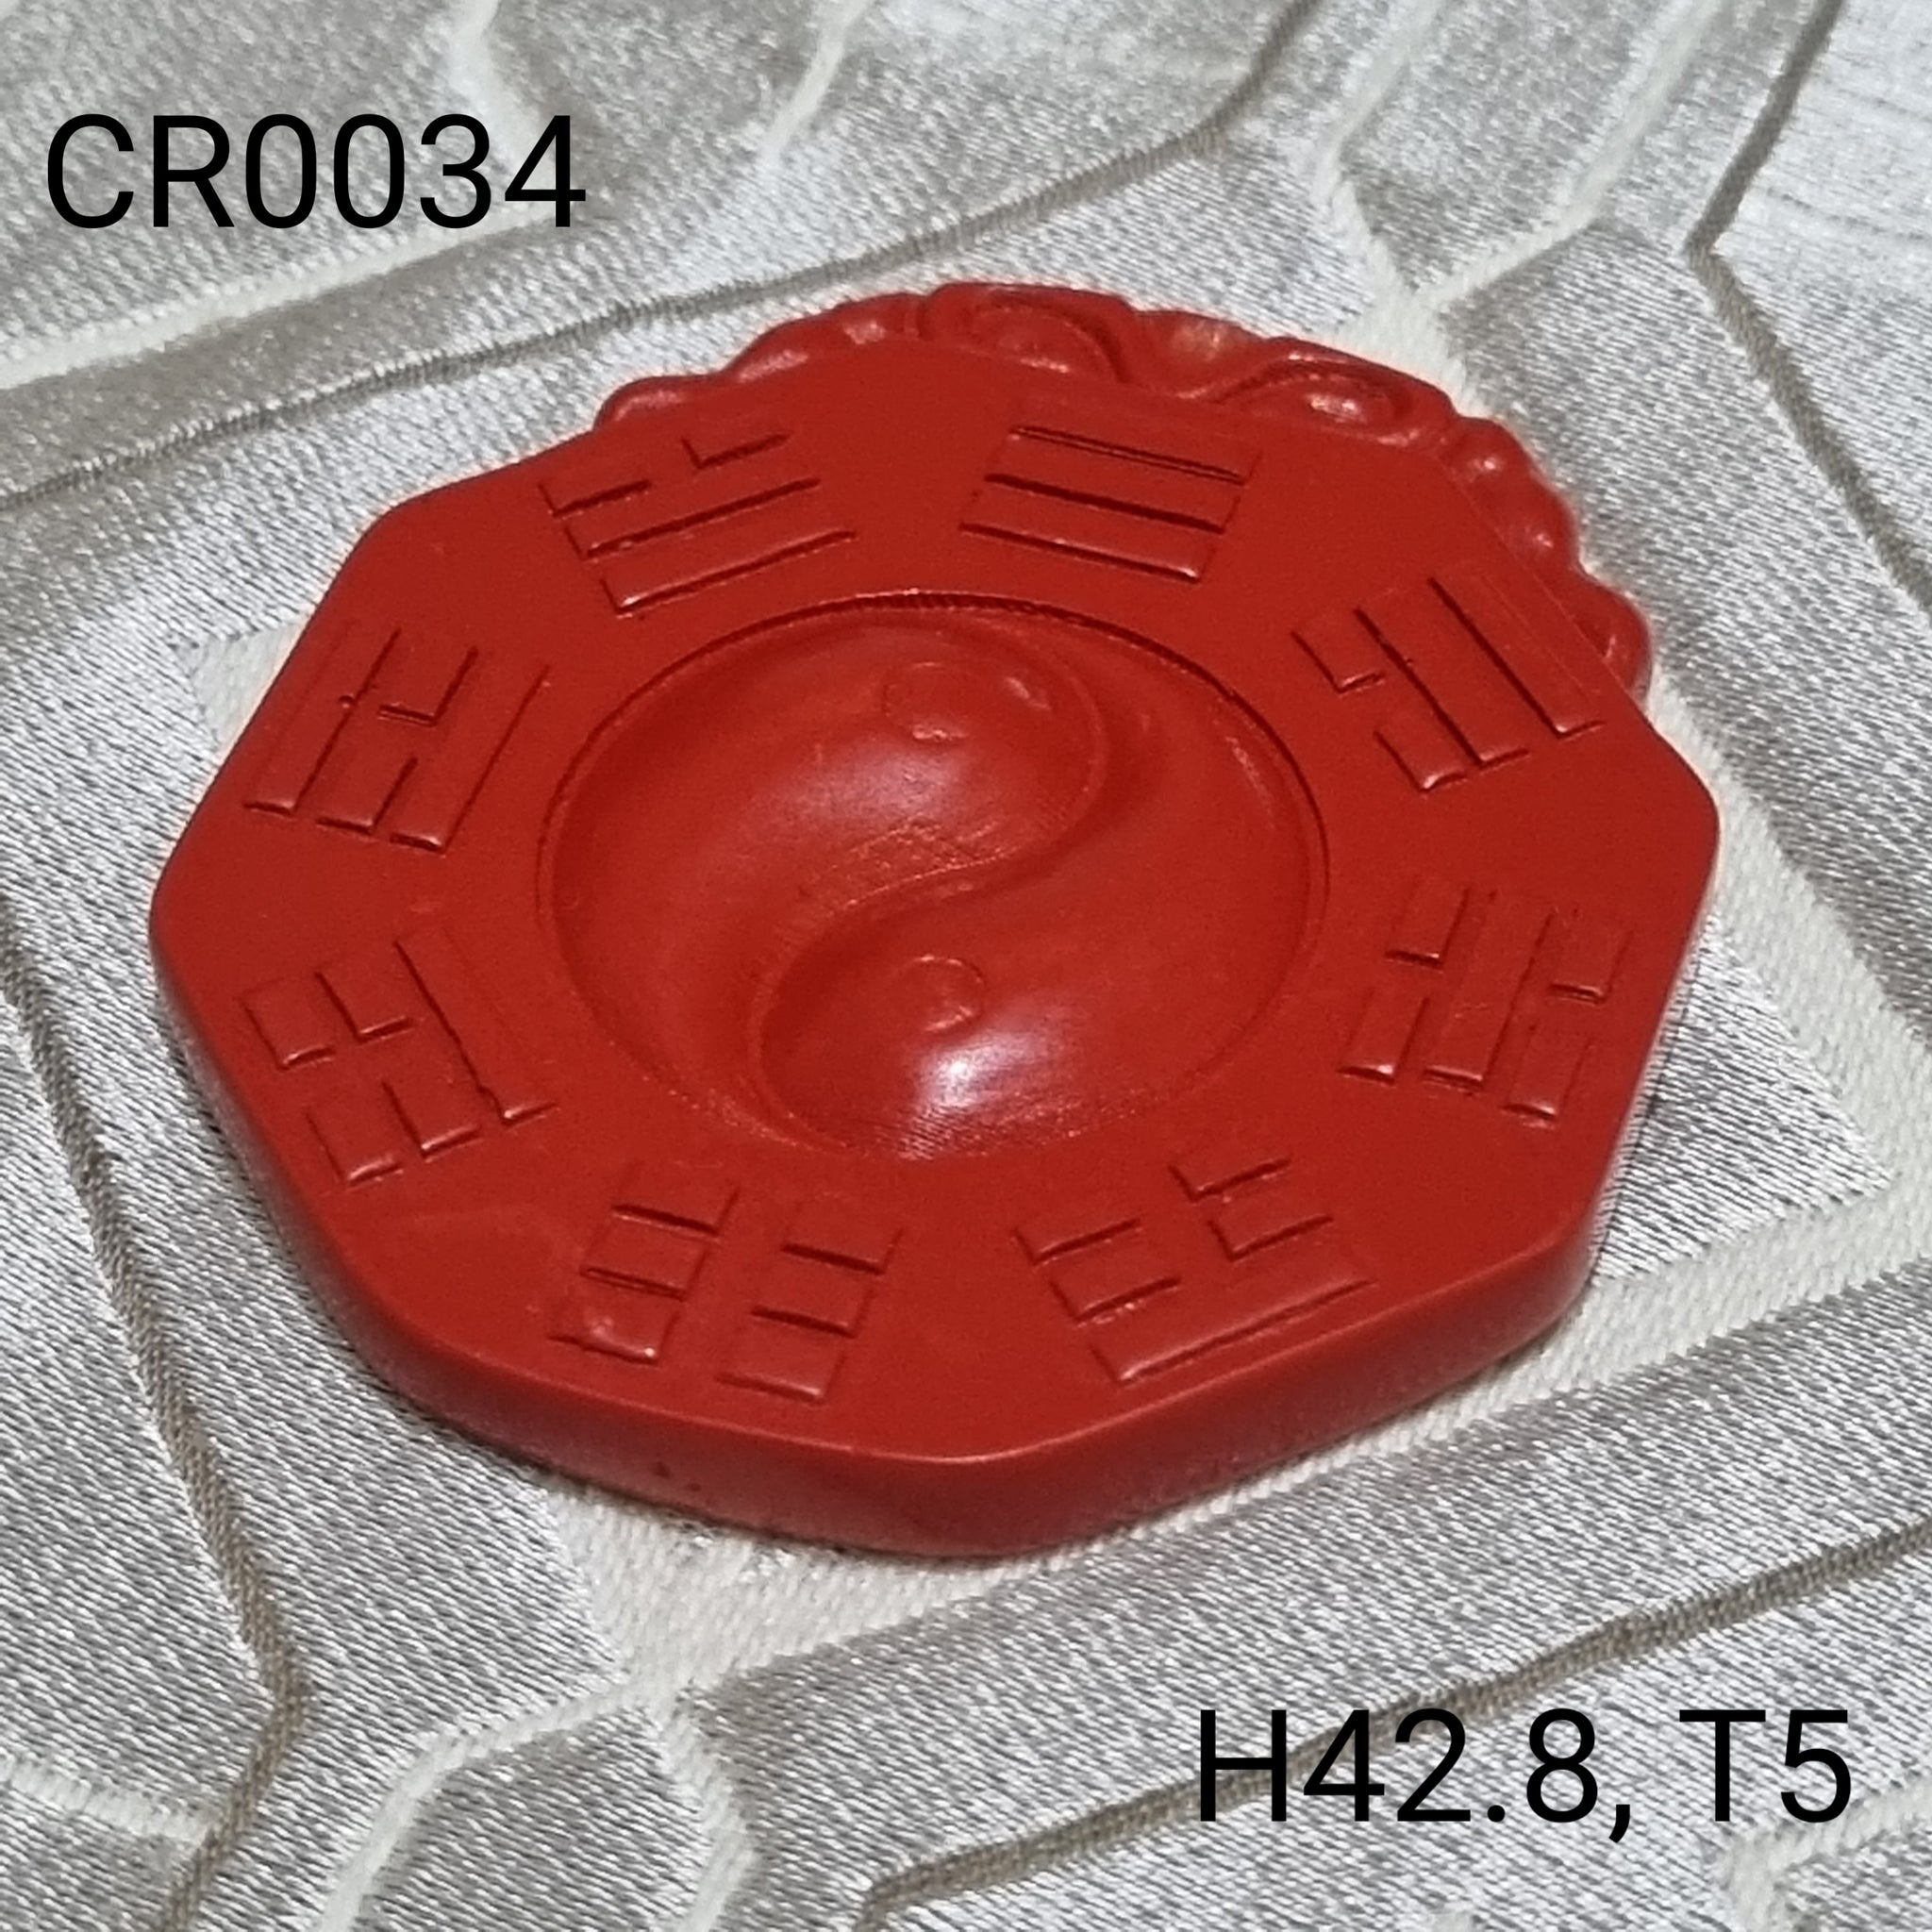 CR0034 -  Cinnabar Bagua Display